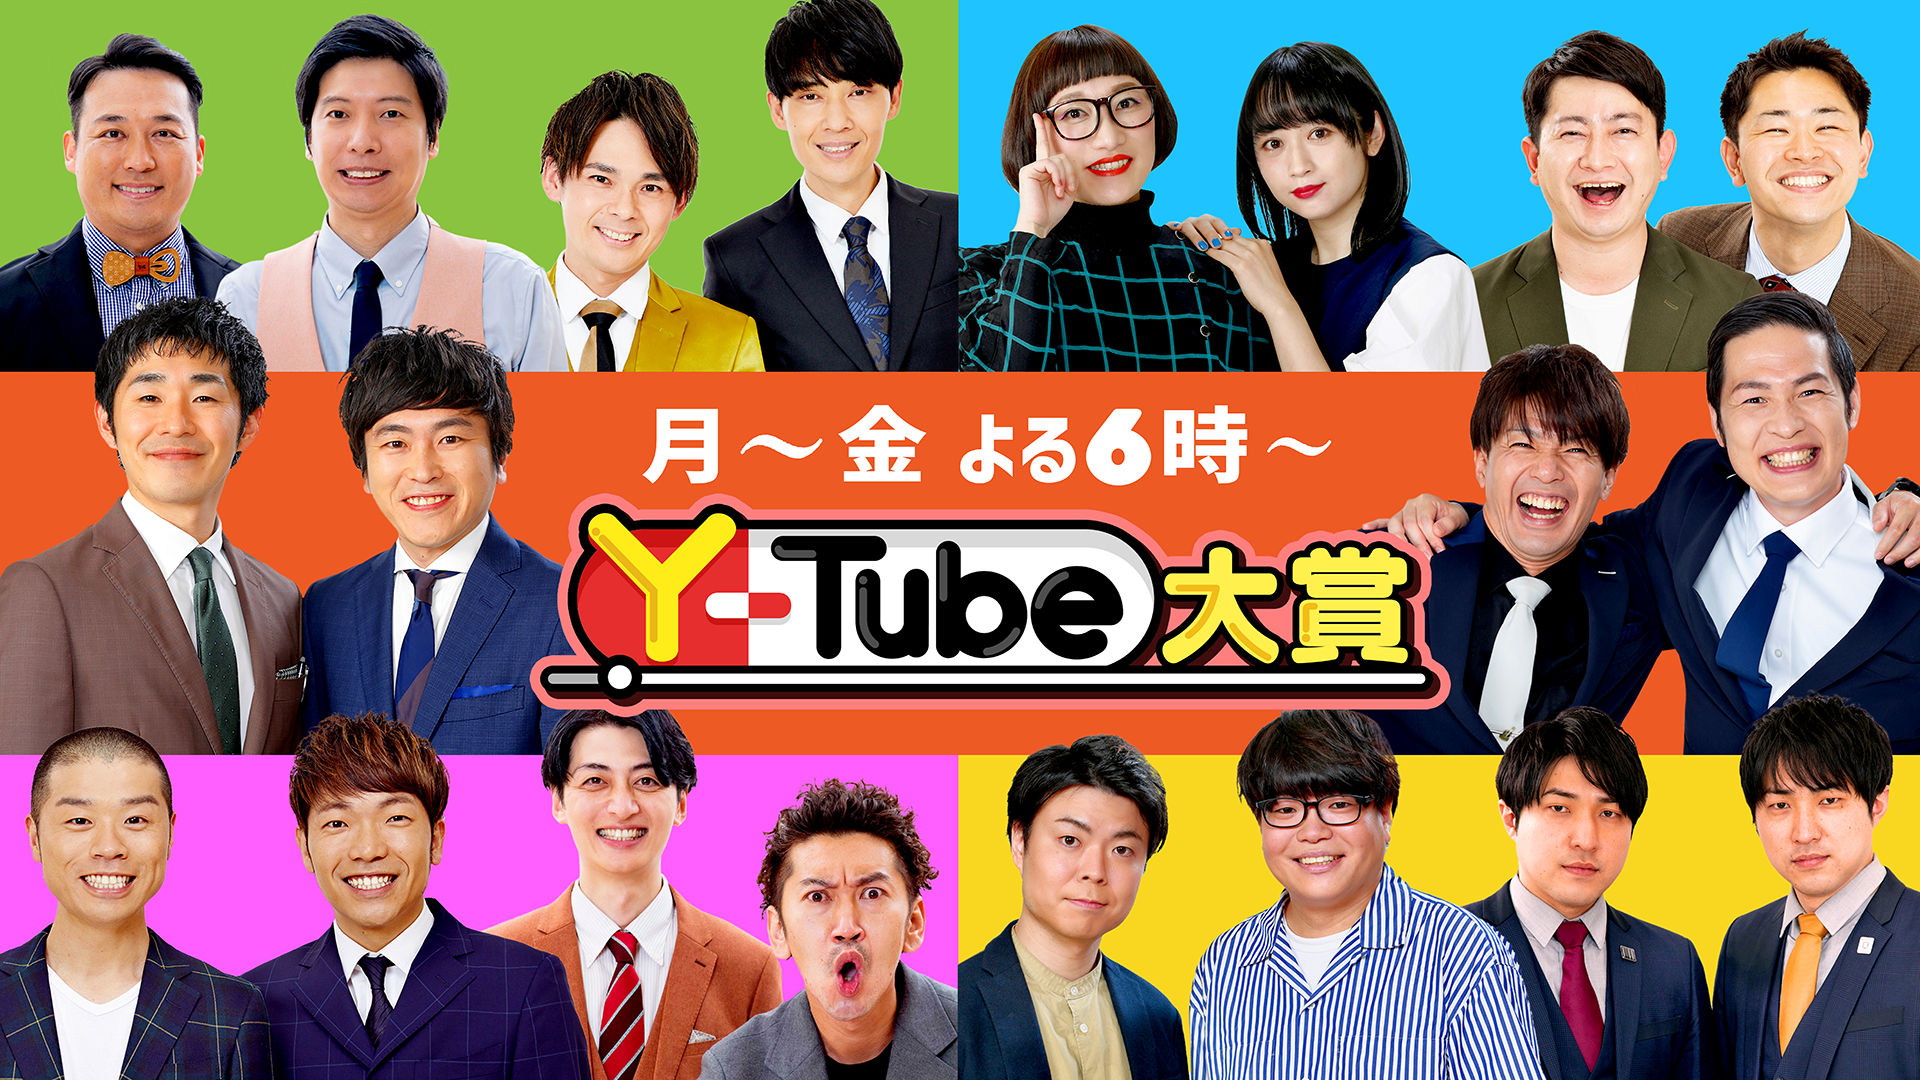 Y-Tube大賞